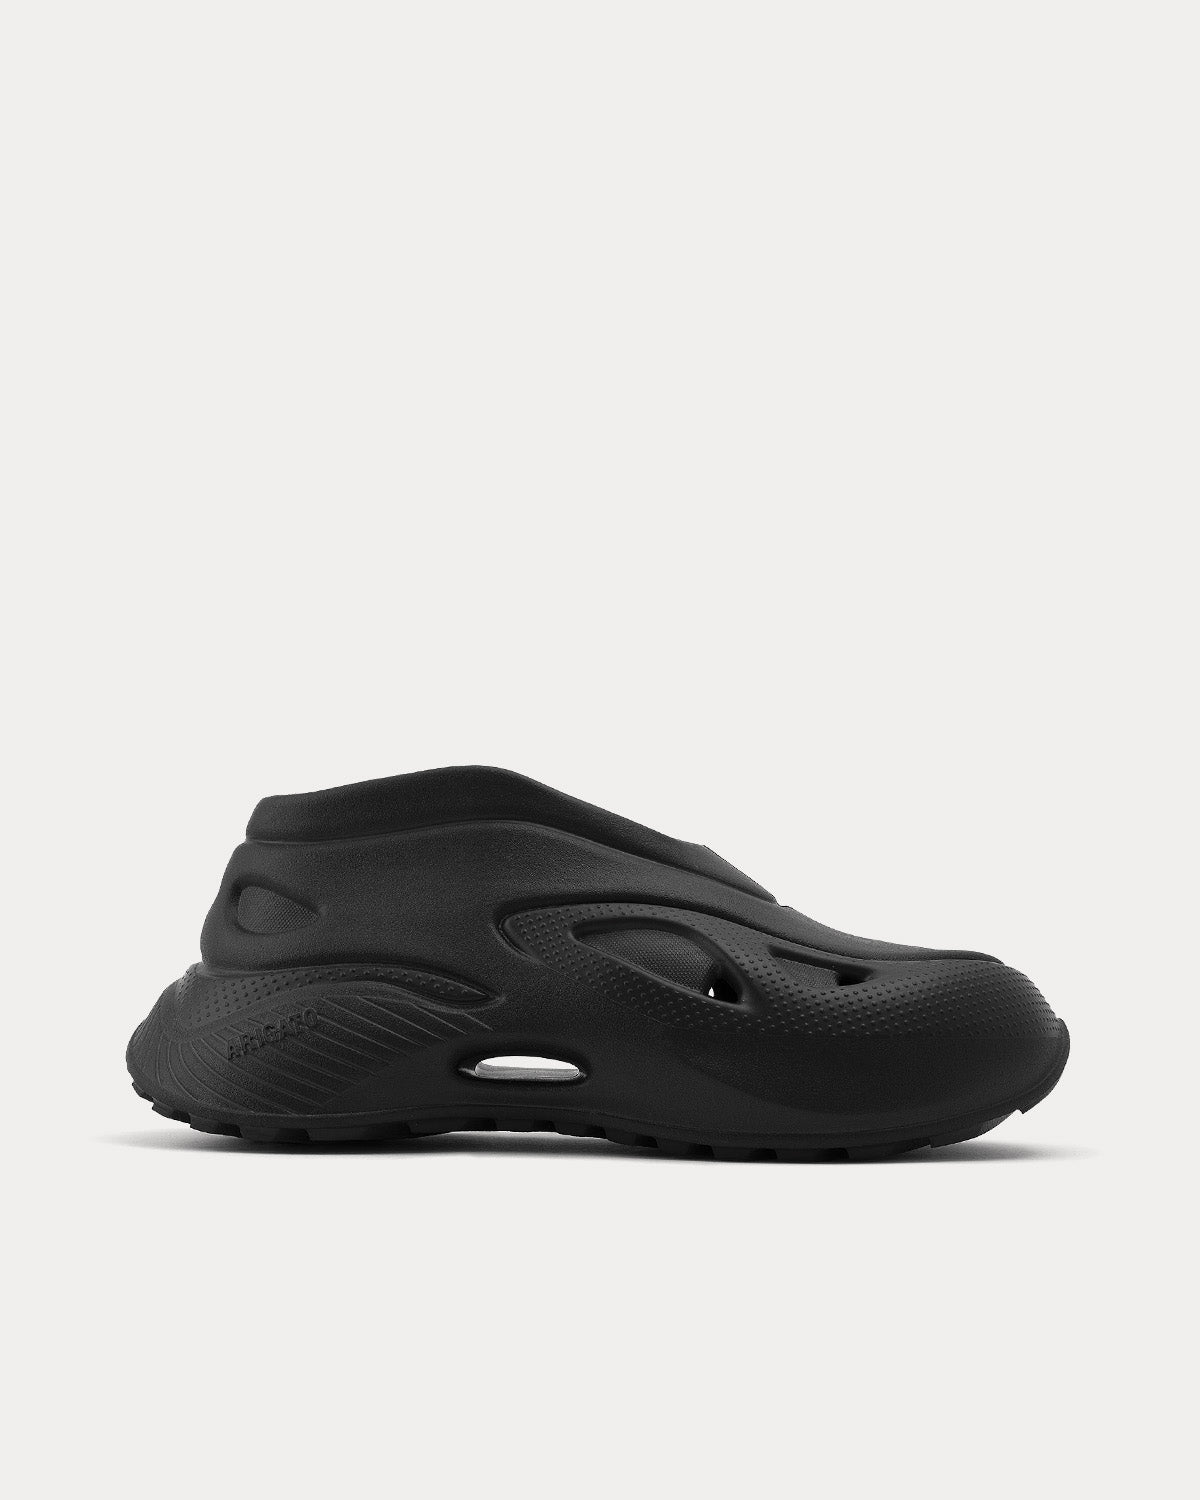 Axel Arigato - Pyro Black Slip On Sneakers